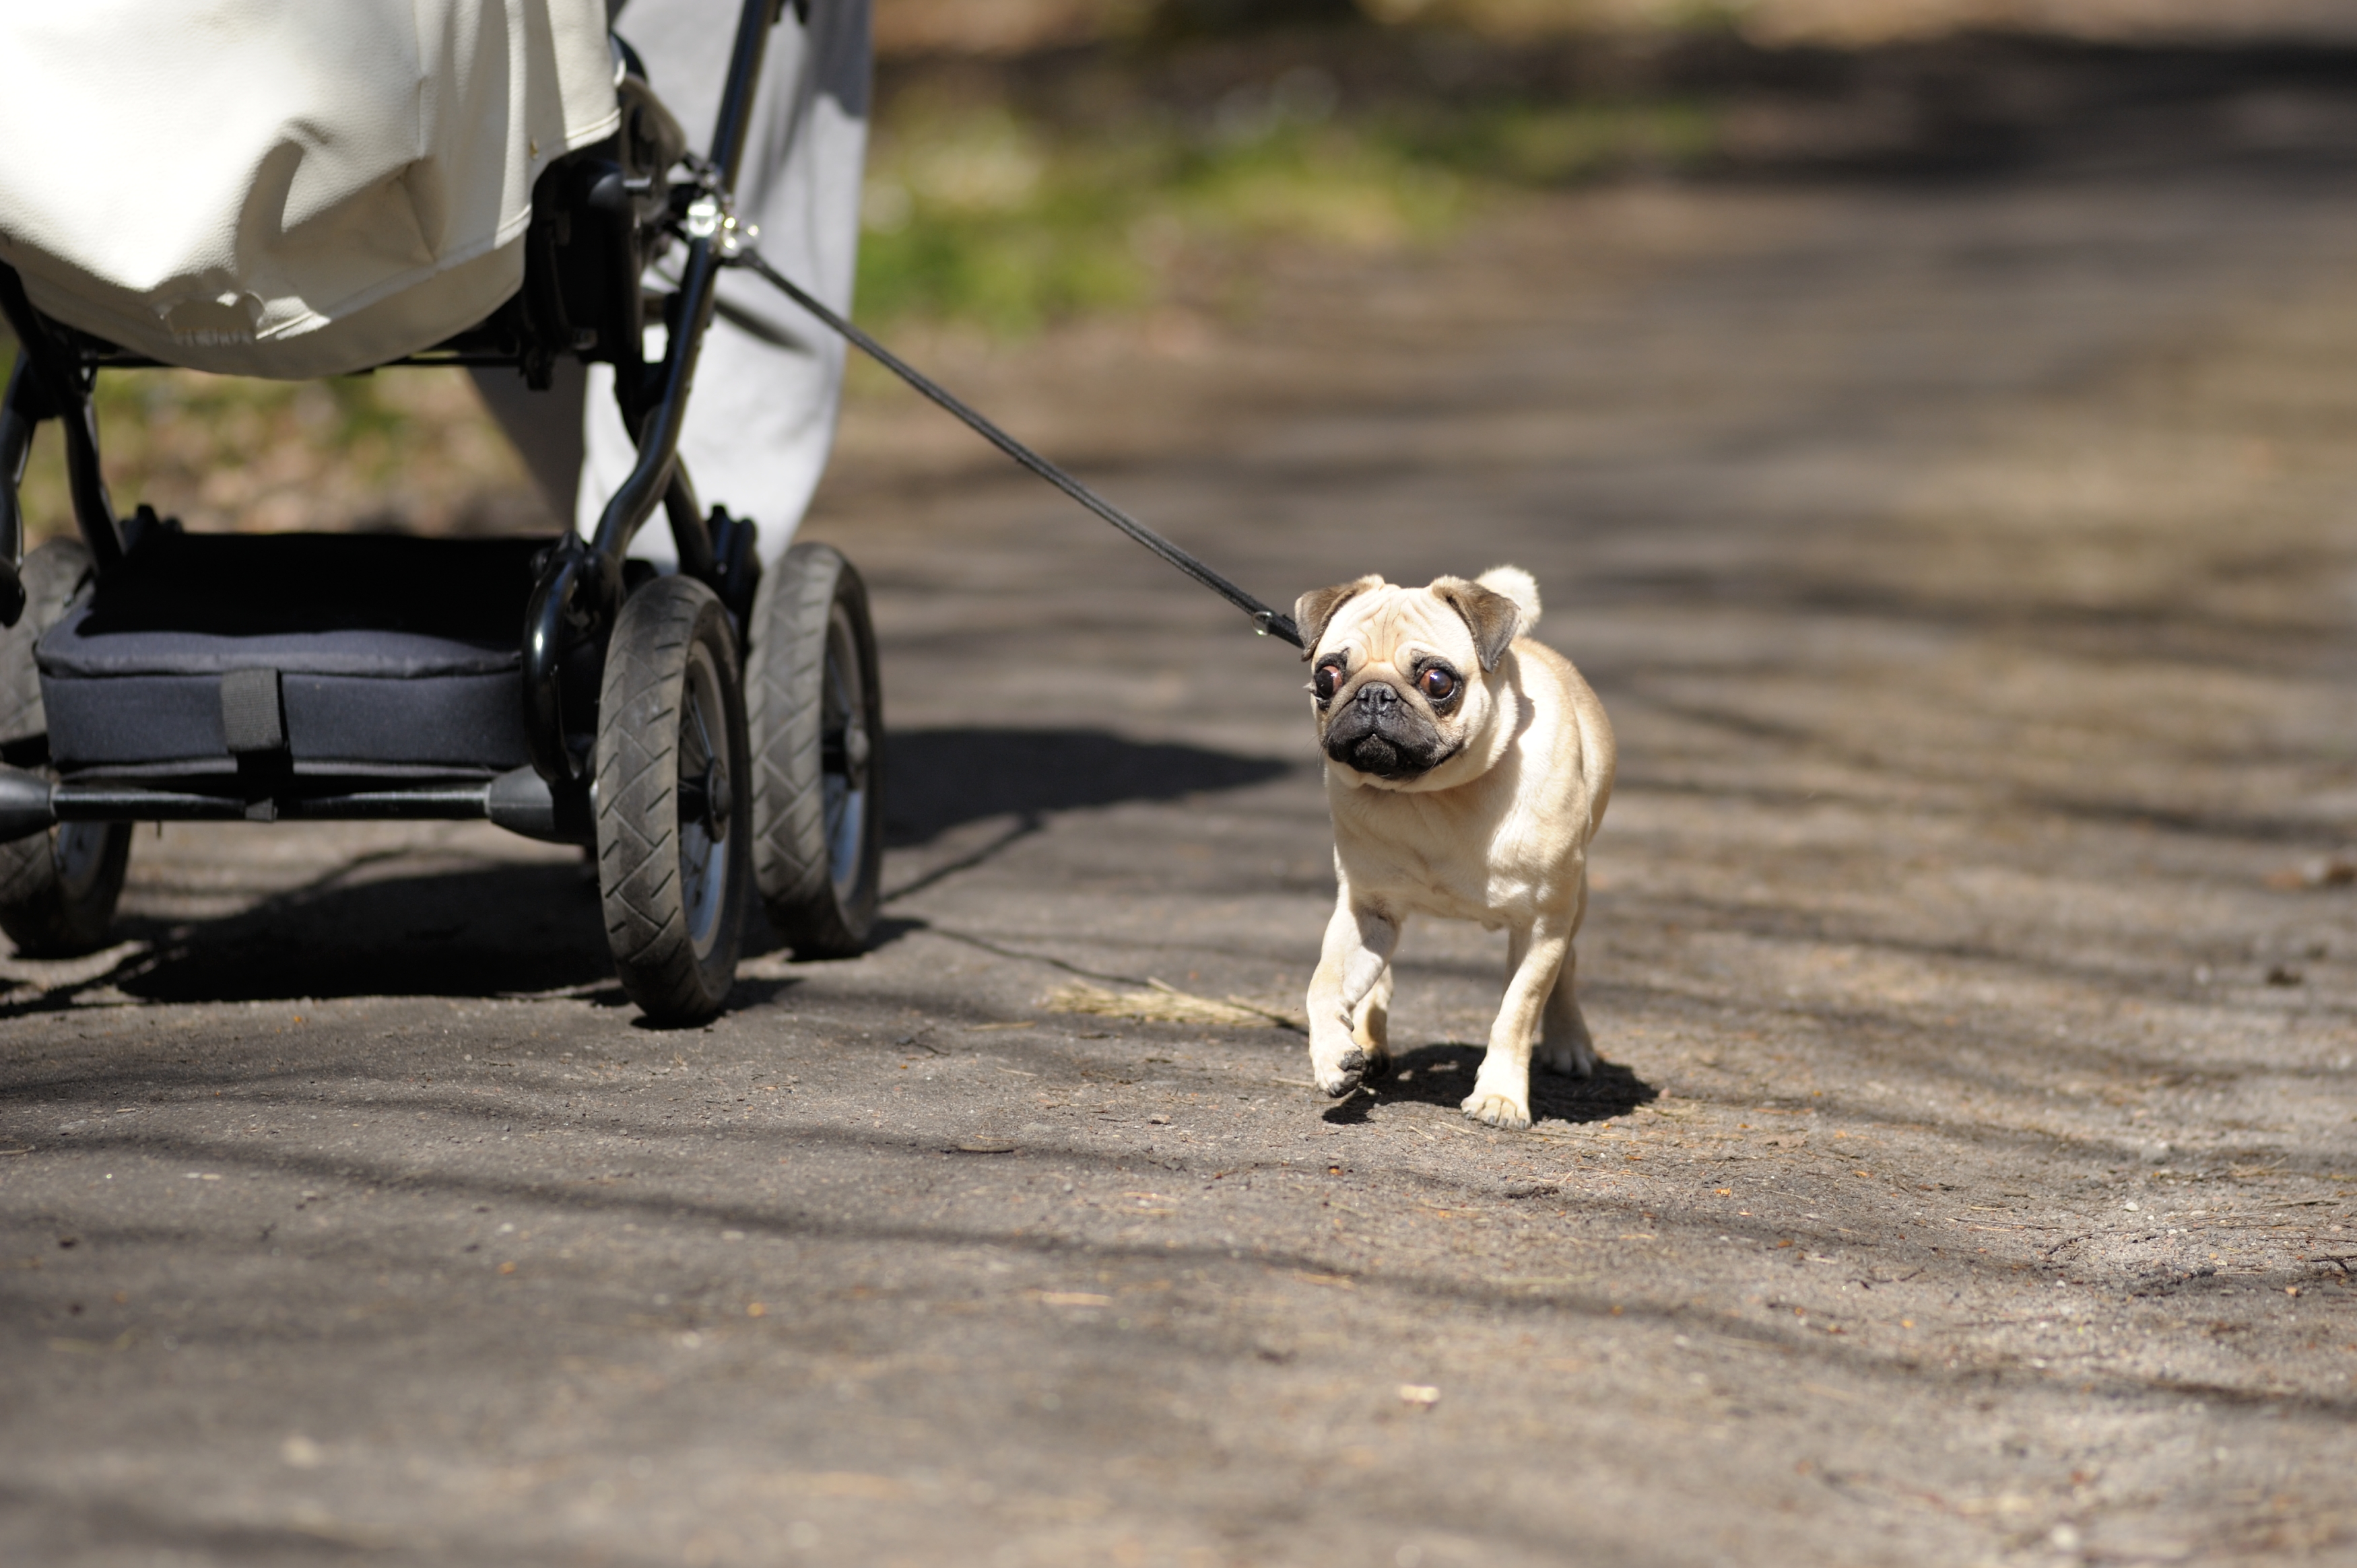 Na zdjęciu widoczny jest pies rasy mops o beżowej sierści oraz fragment wózka dziecięcego. Pies wyprowadzany jest na smyczy na leśnej ścieżce.